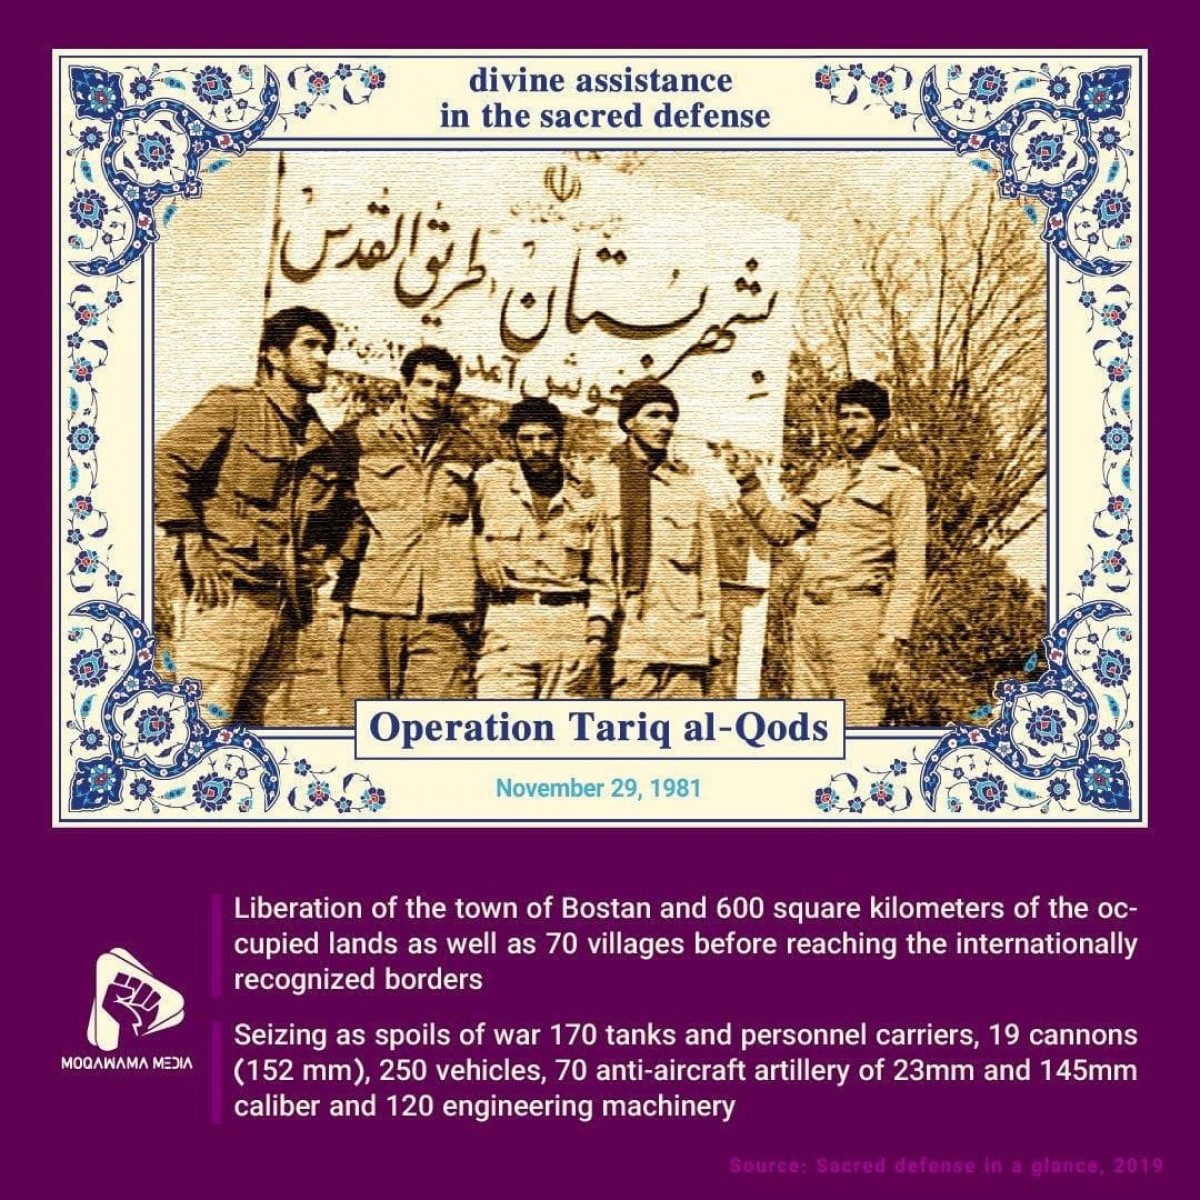 Operation Tariq al-Qods (November 29, 1981)